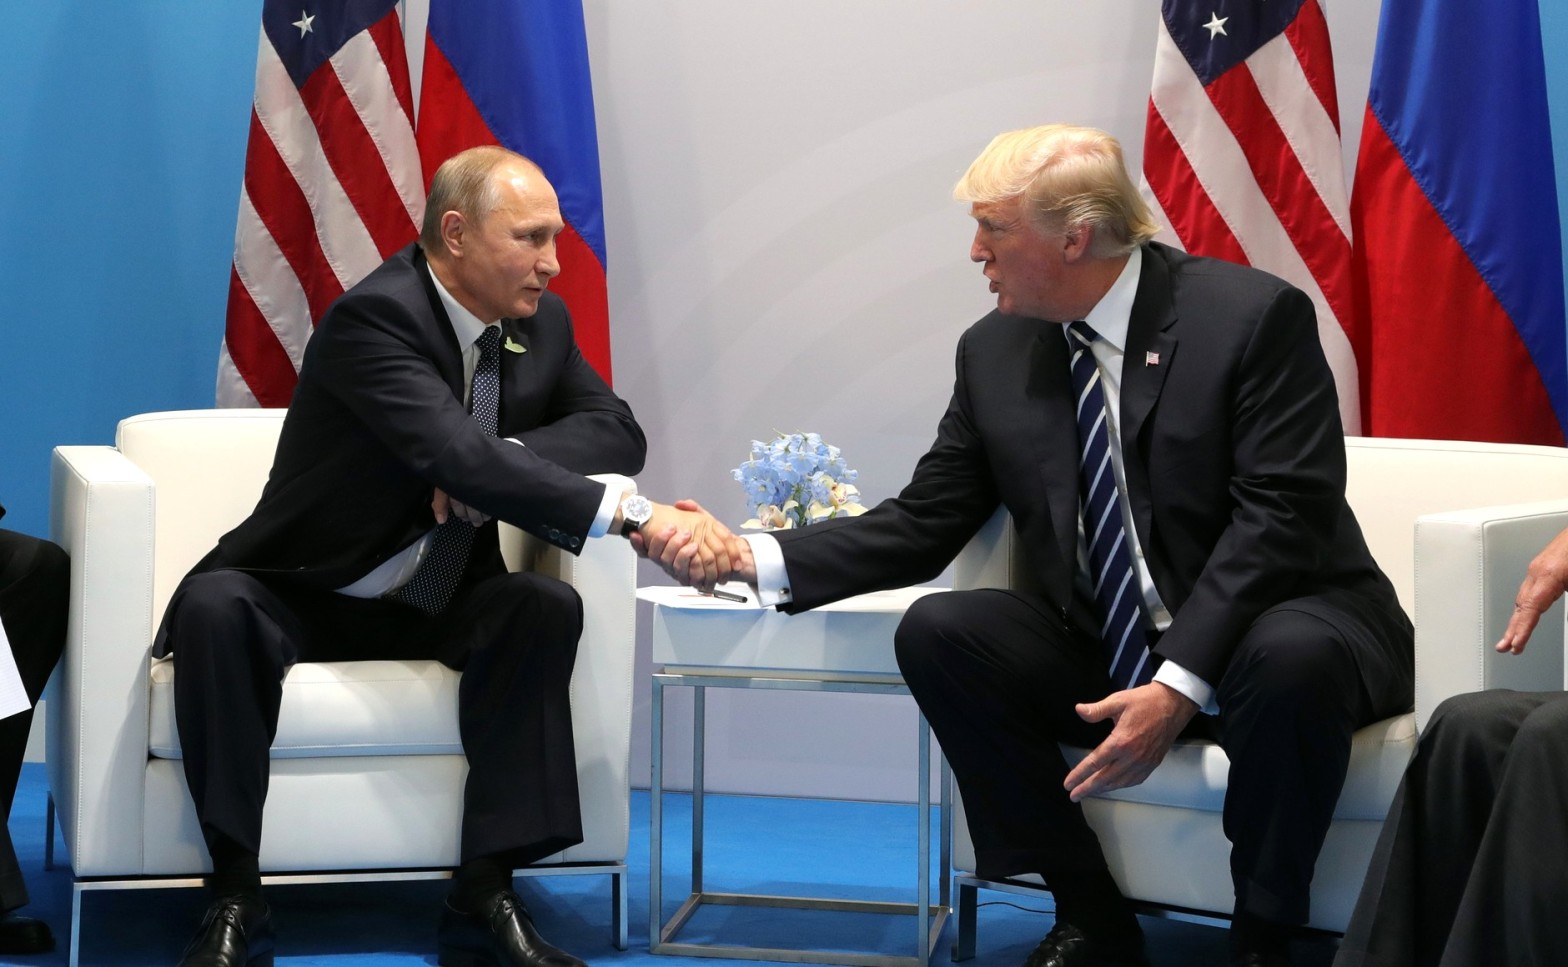 Vladimir Putin and Donald Trump meet at the 2017 G-20 Hamburg Summit/Source: https://commons.wikimedia.org/wiki/File:Vladimir_Putin_and_Donald_Trump_at_the_2017_G-20_Hamburg_Summit_%282%29.jpg